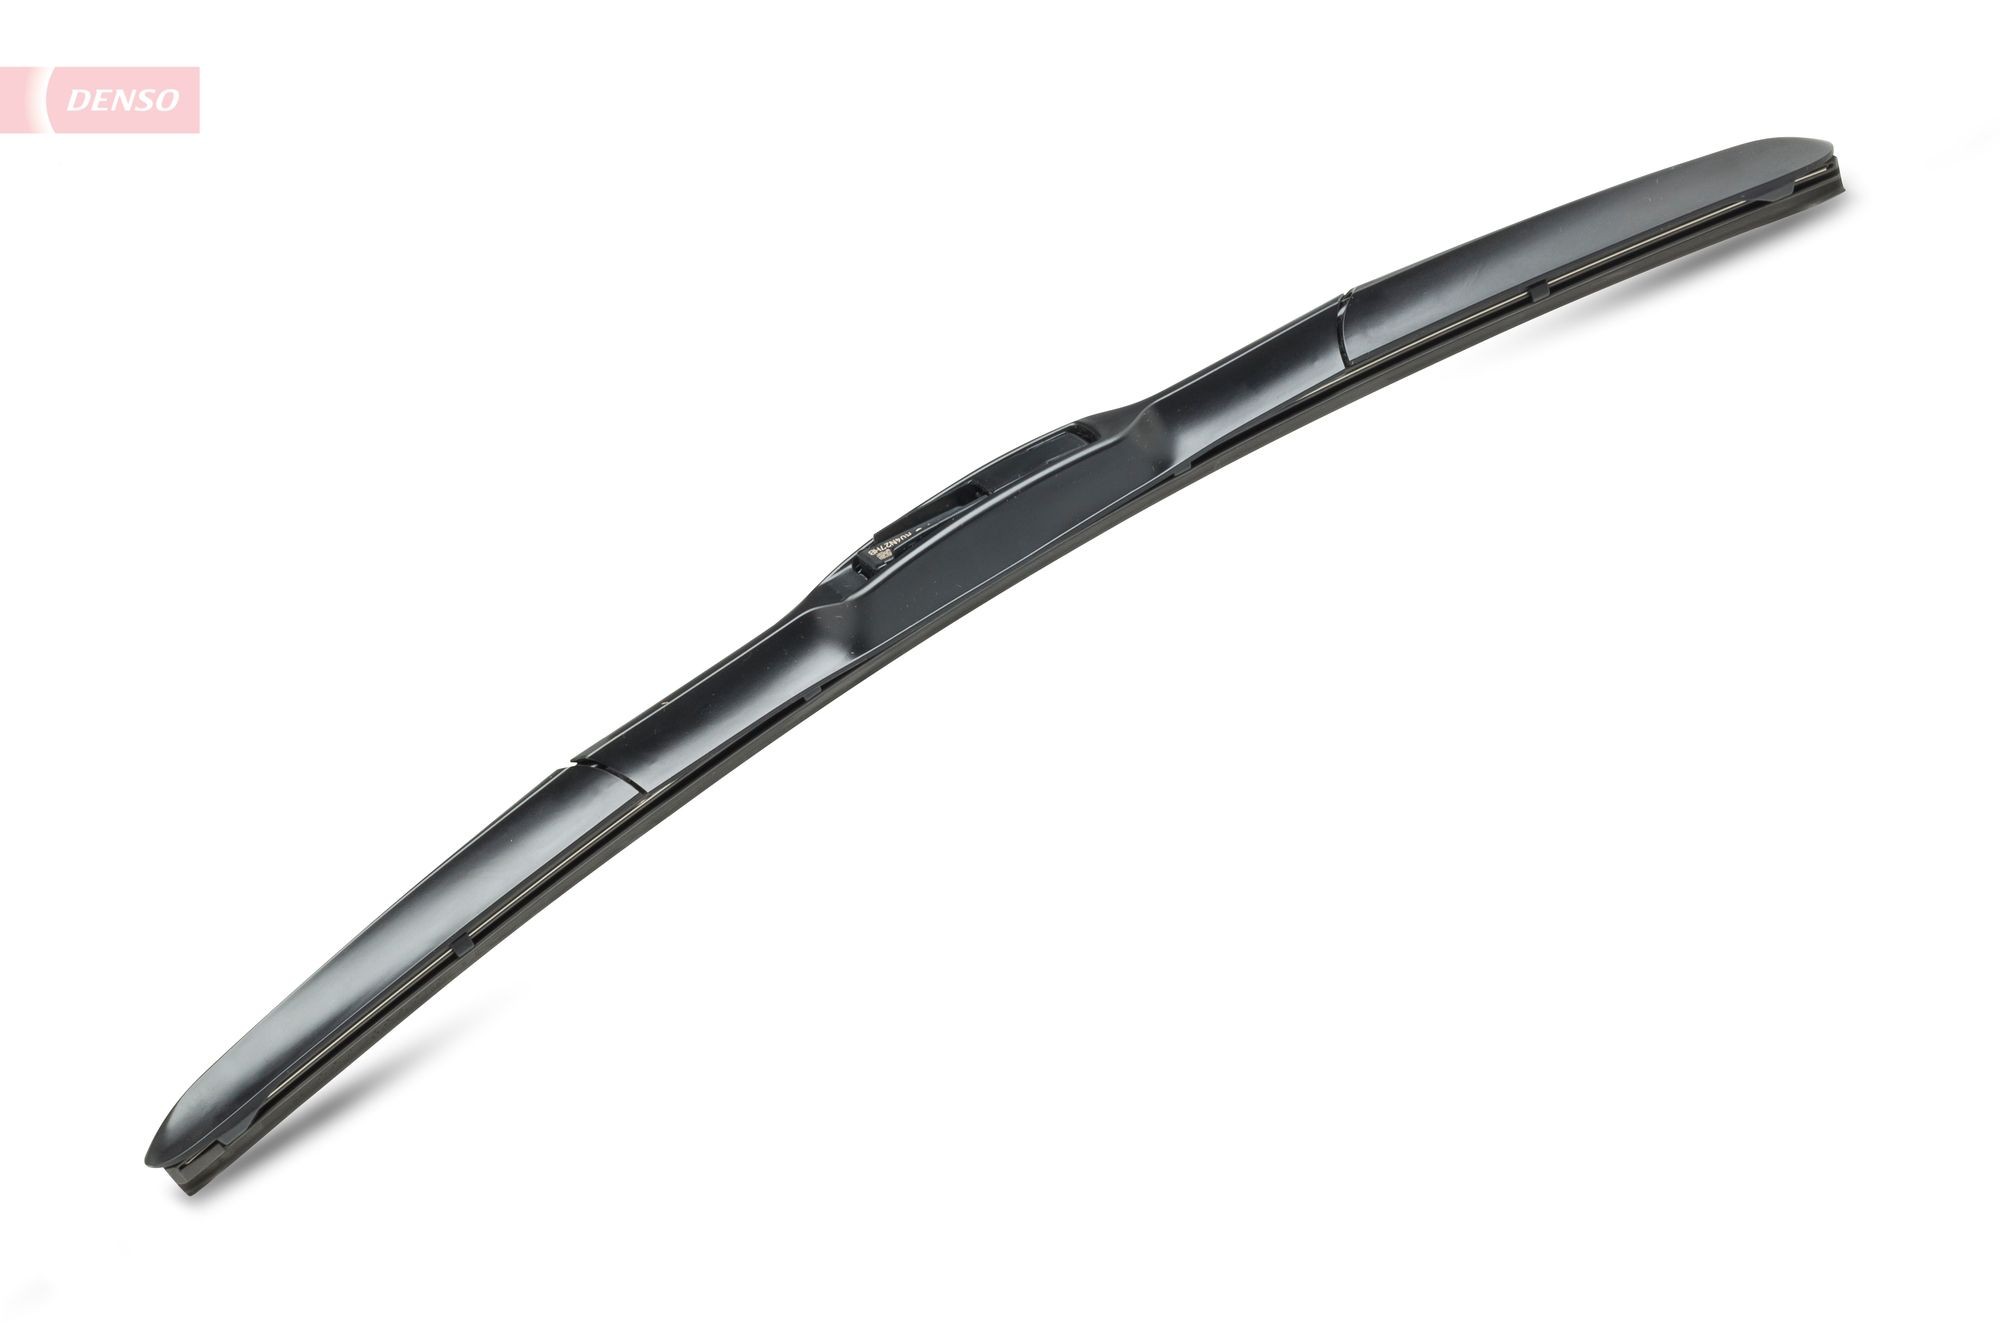 DENSO Hybrid DUR-043R Wiper blade 425 mm, Hybrid Wiper Blade, 17 Inch